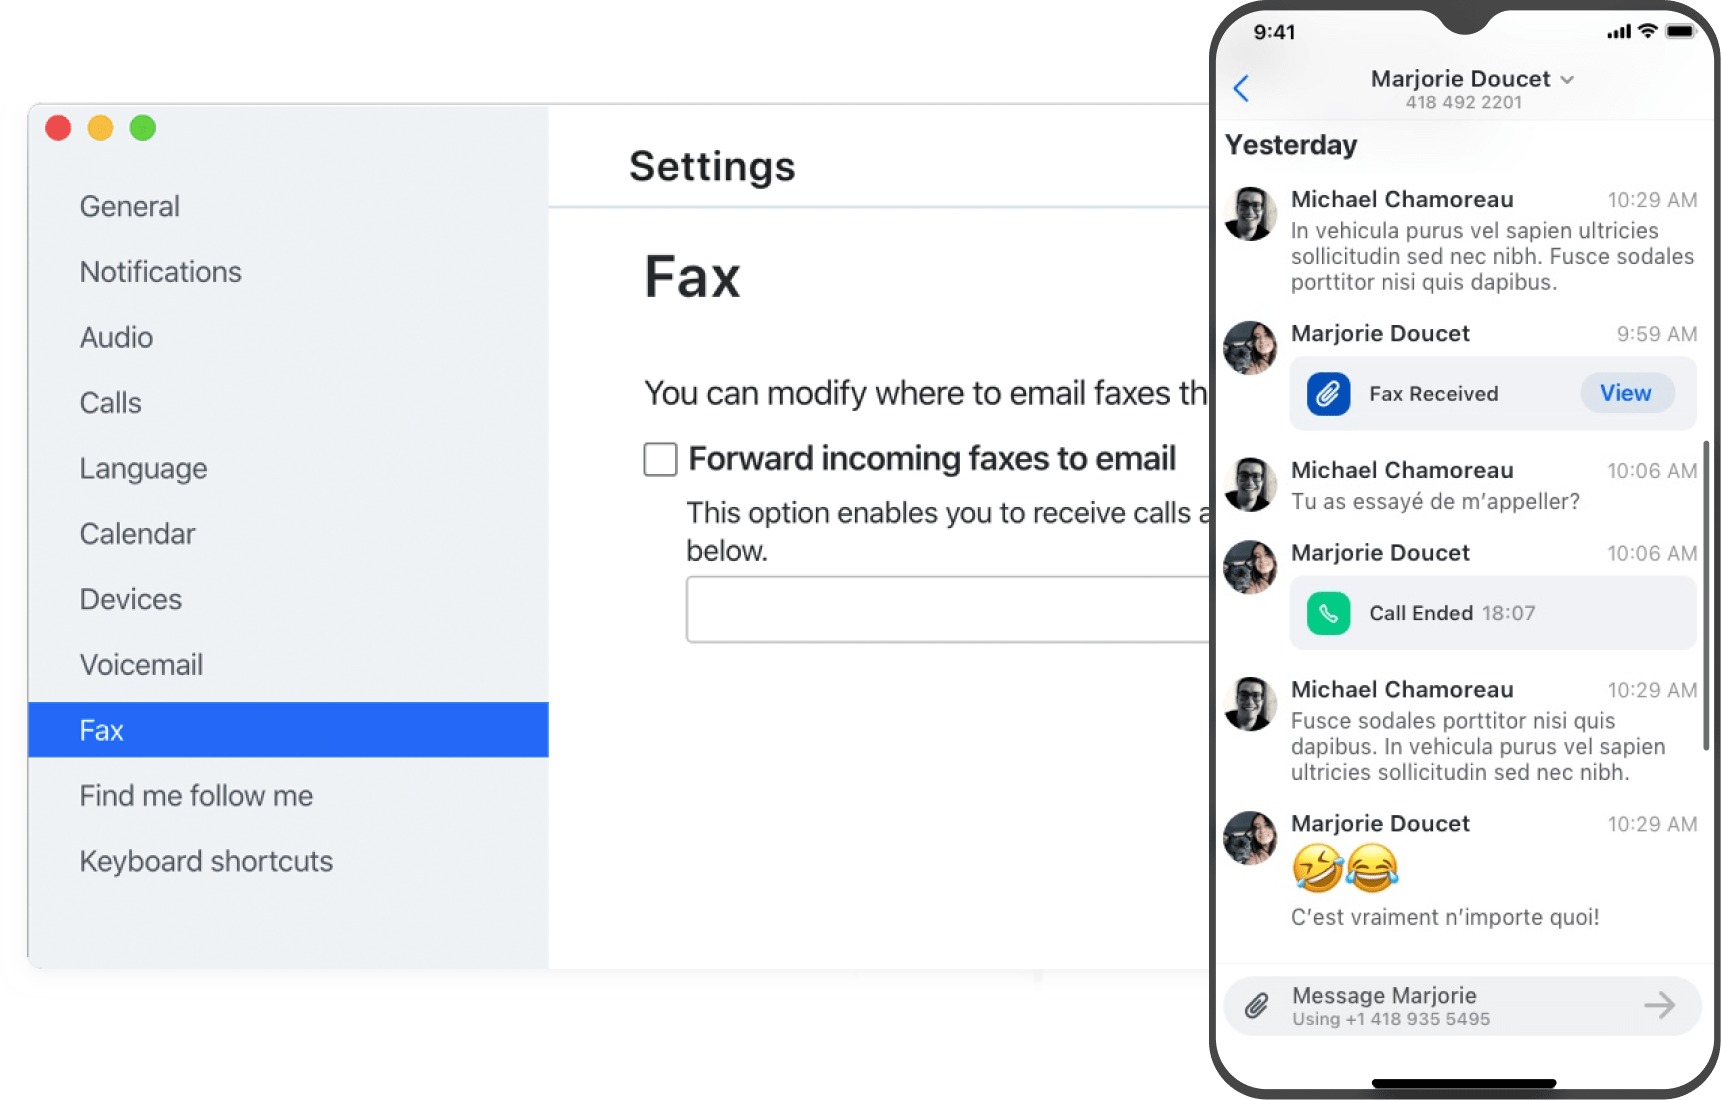 Weergave van optie om doorsturen van faxen in te stellen in GoTo Connect, met een smartphone waarop een e-mail inbox met doorgestuurde faxen te zien is.